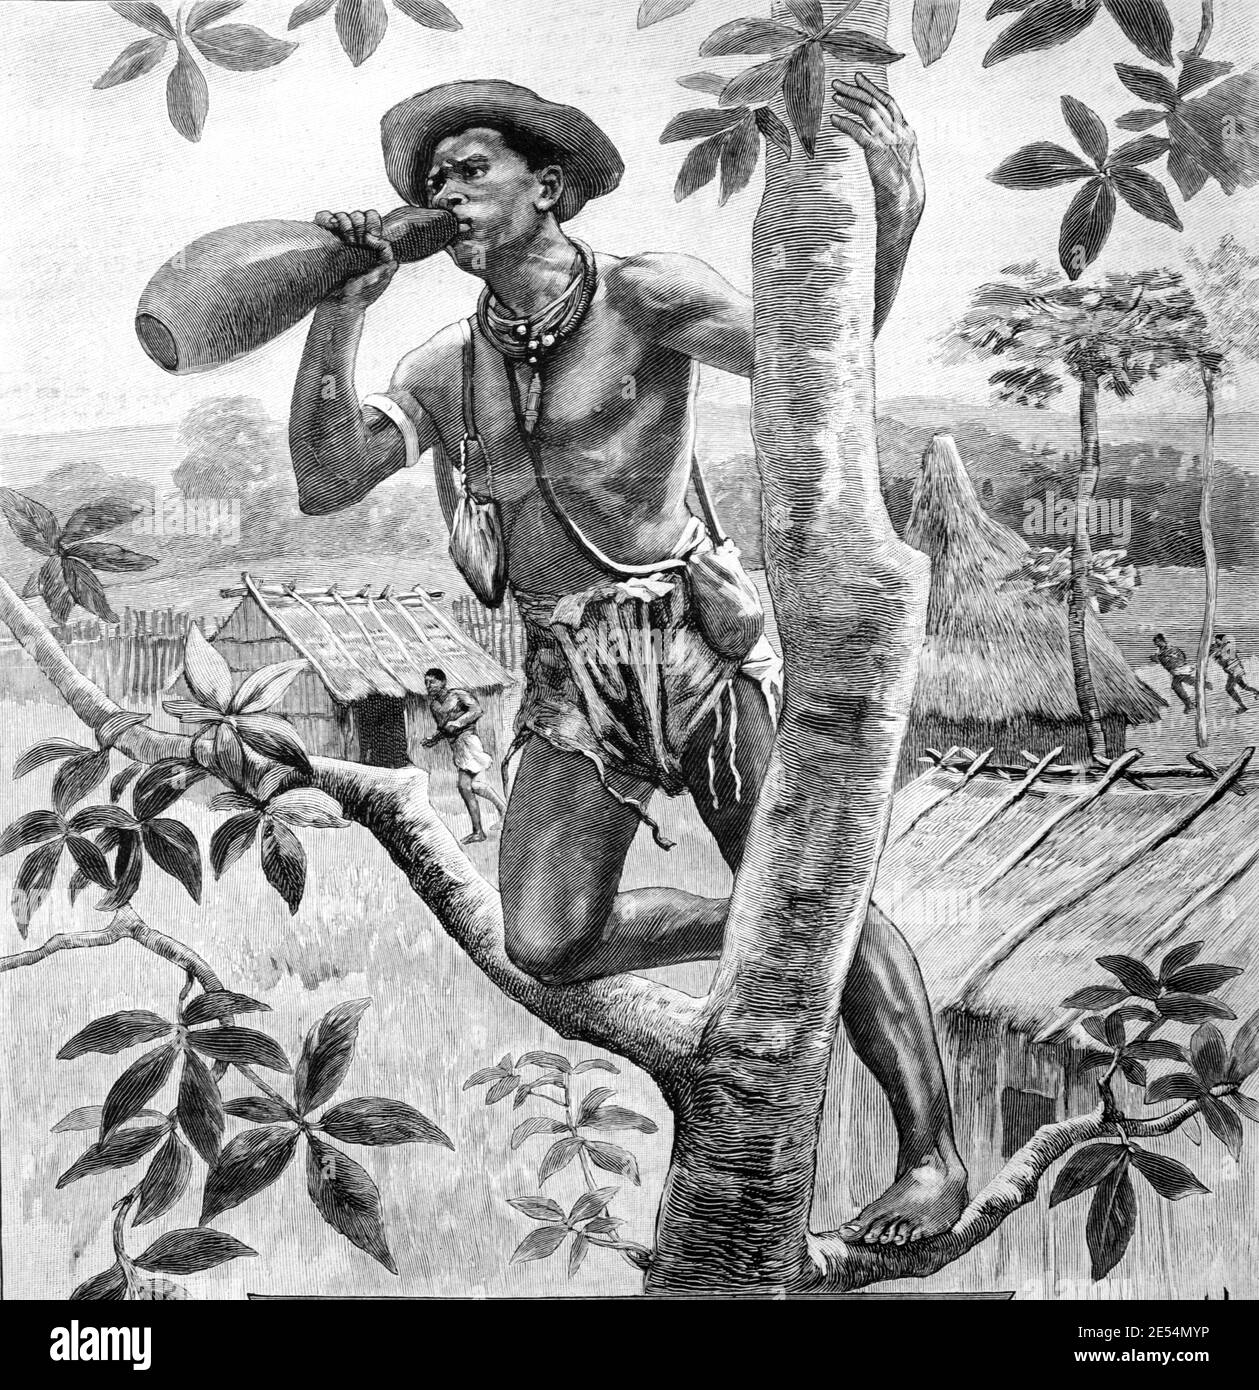 Messanger in Tree Top Calling mit Calabash oder Bottle Gourd Verwendet als natürliches Megaphon in Burkina Faso Westafrika 1904 Vintage Illustration oder Gravur Stockfoto